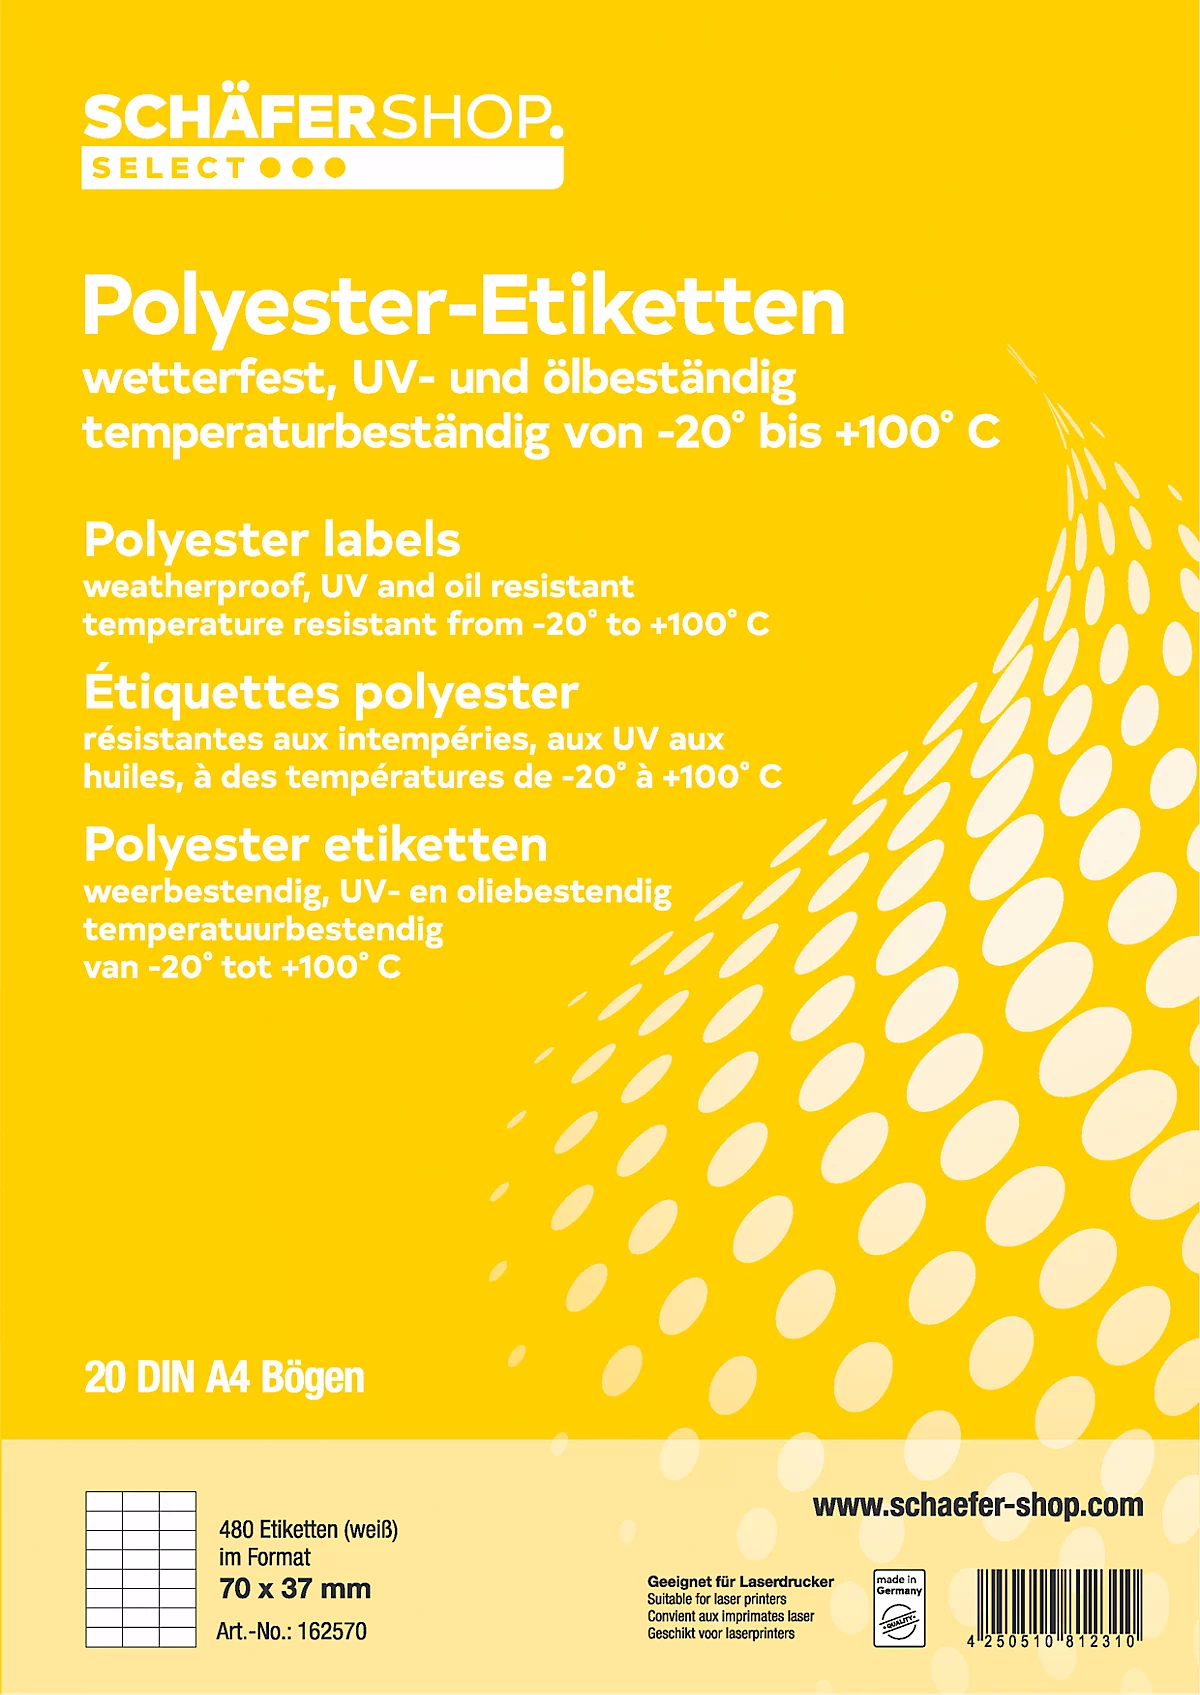 Schäfer Shop Select Wetterfeste Etiketten, 70 x 37 mm, Polyester weiß, 20 Blatt